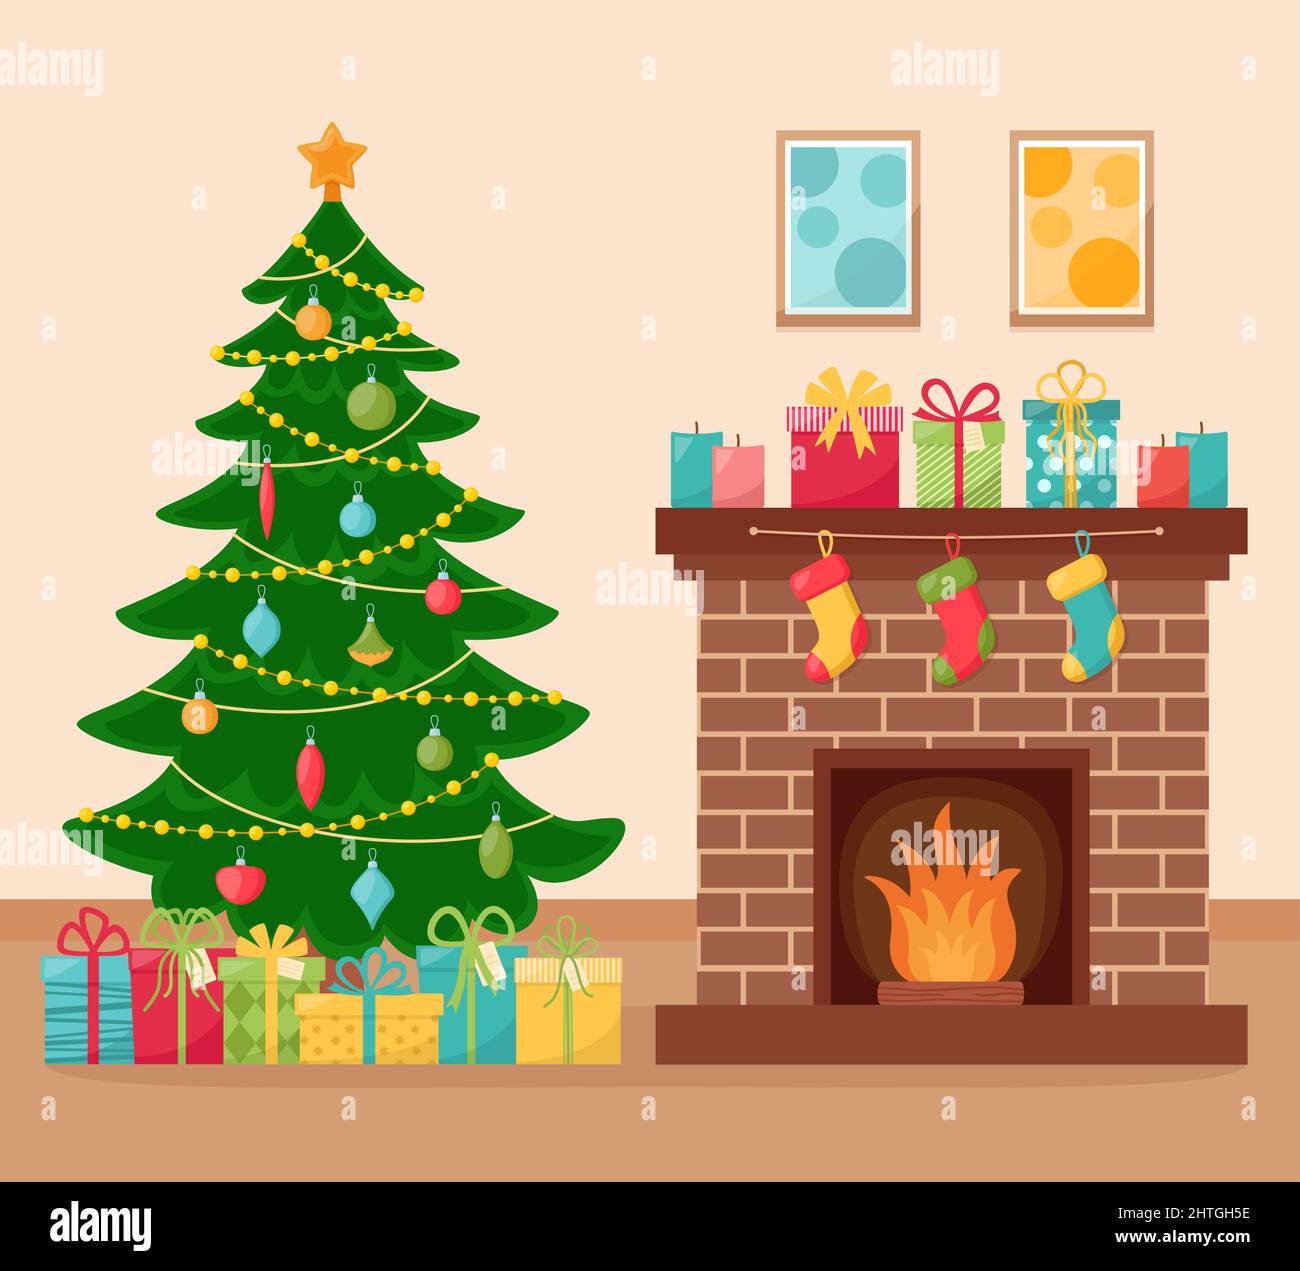 Weihnachtliche Zimmereinrichtung mit verzierten Tannenbäumen und Kamin, Vektorgrafik Stock Vektor